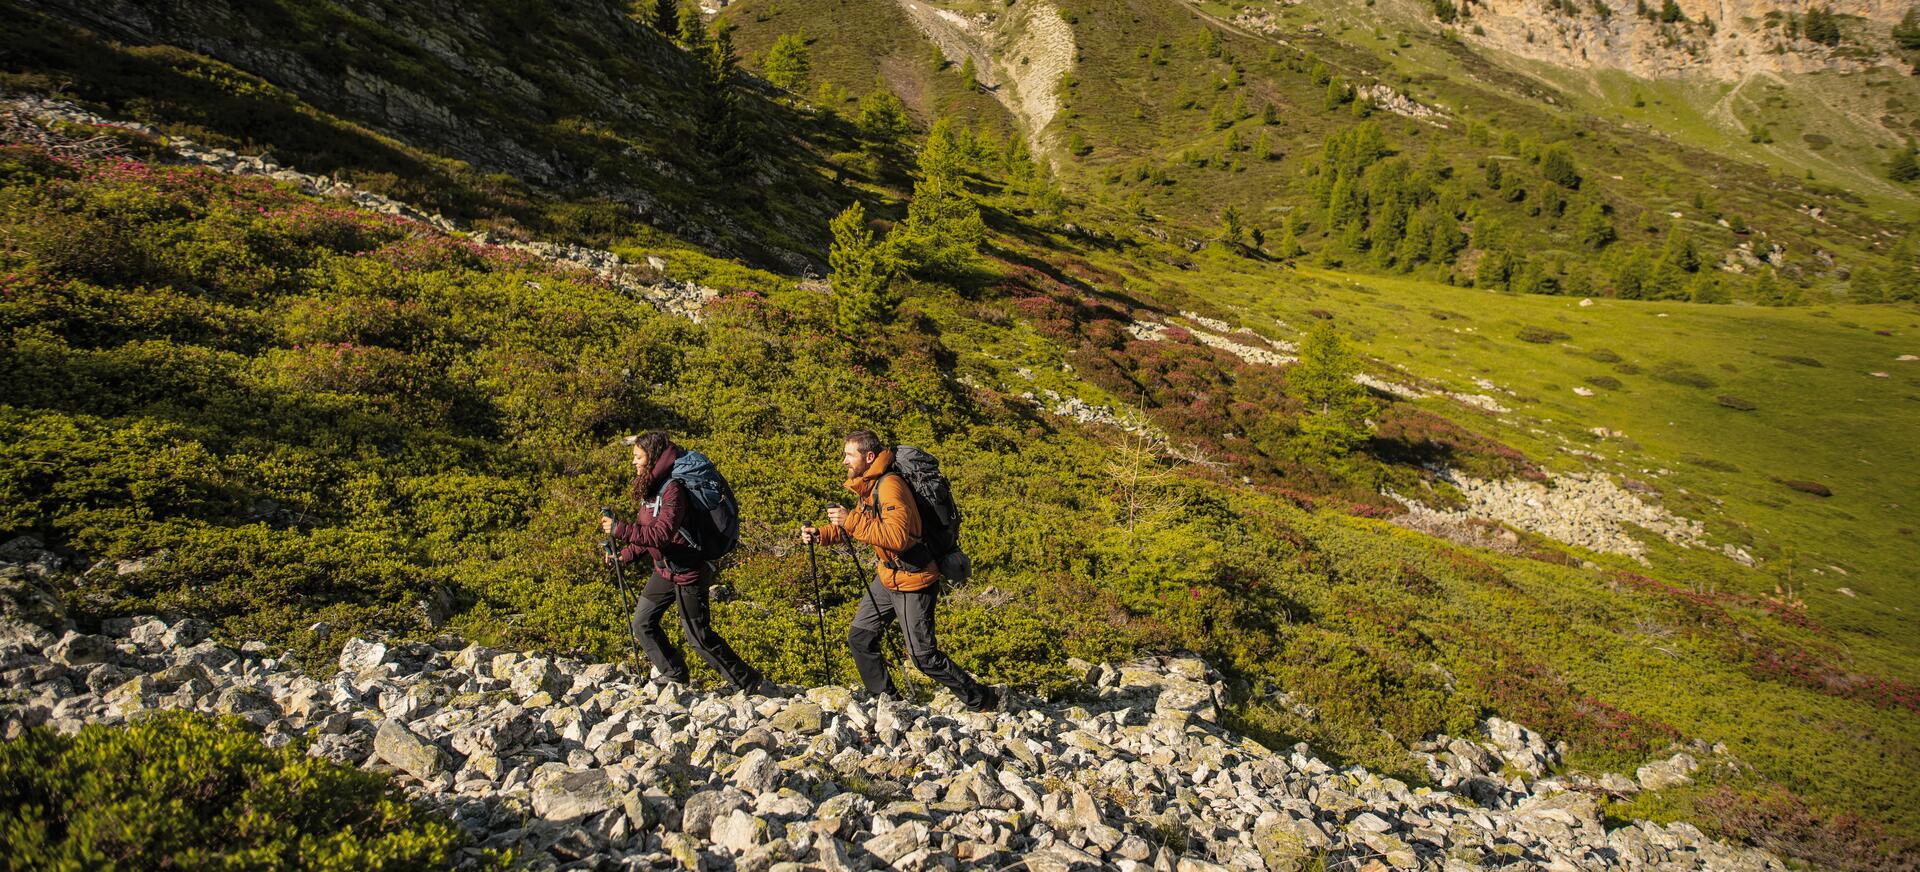 kobieta i mężczyzna wędrujący po górach z kijami trekkingowymi 